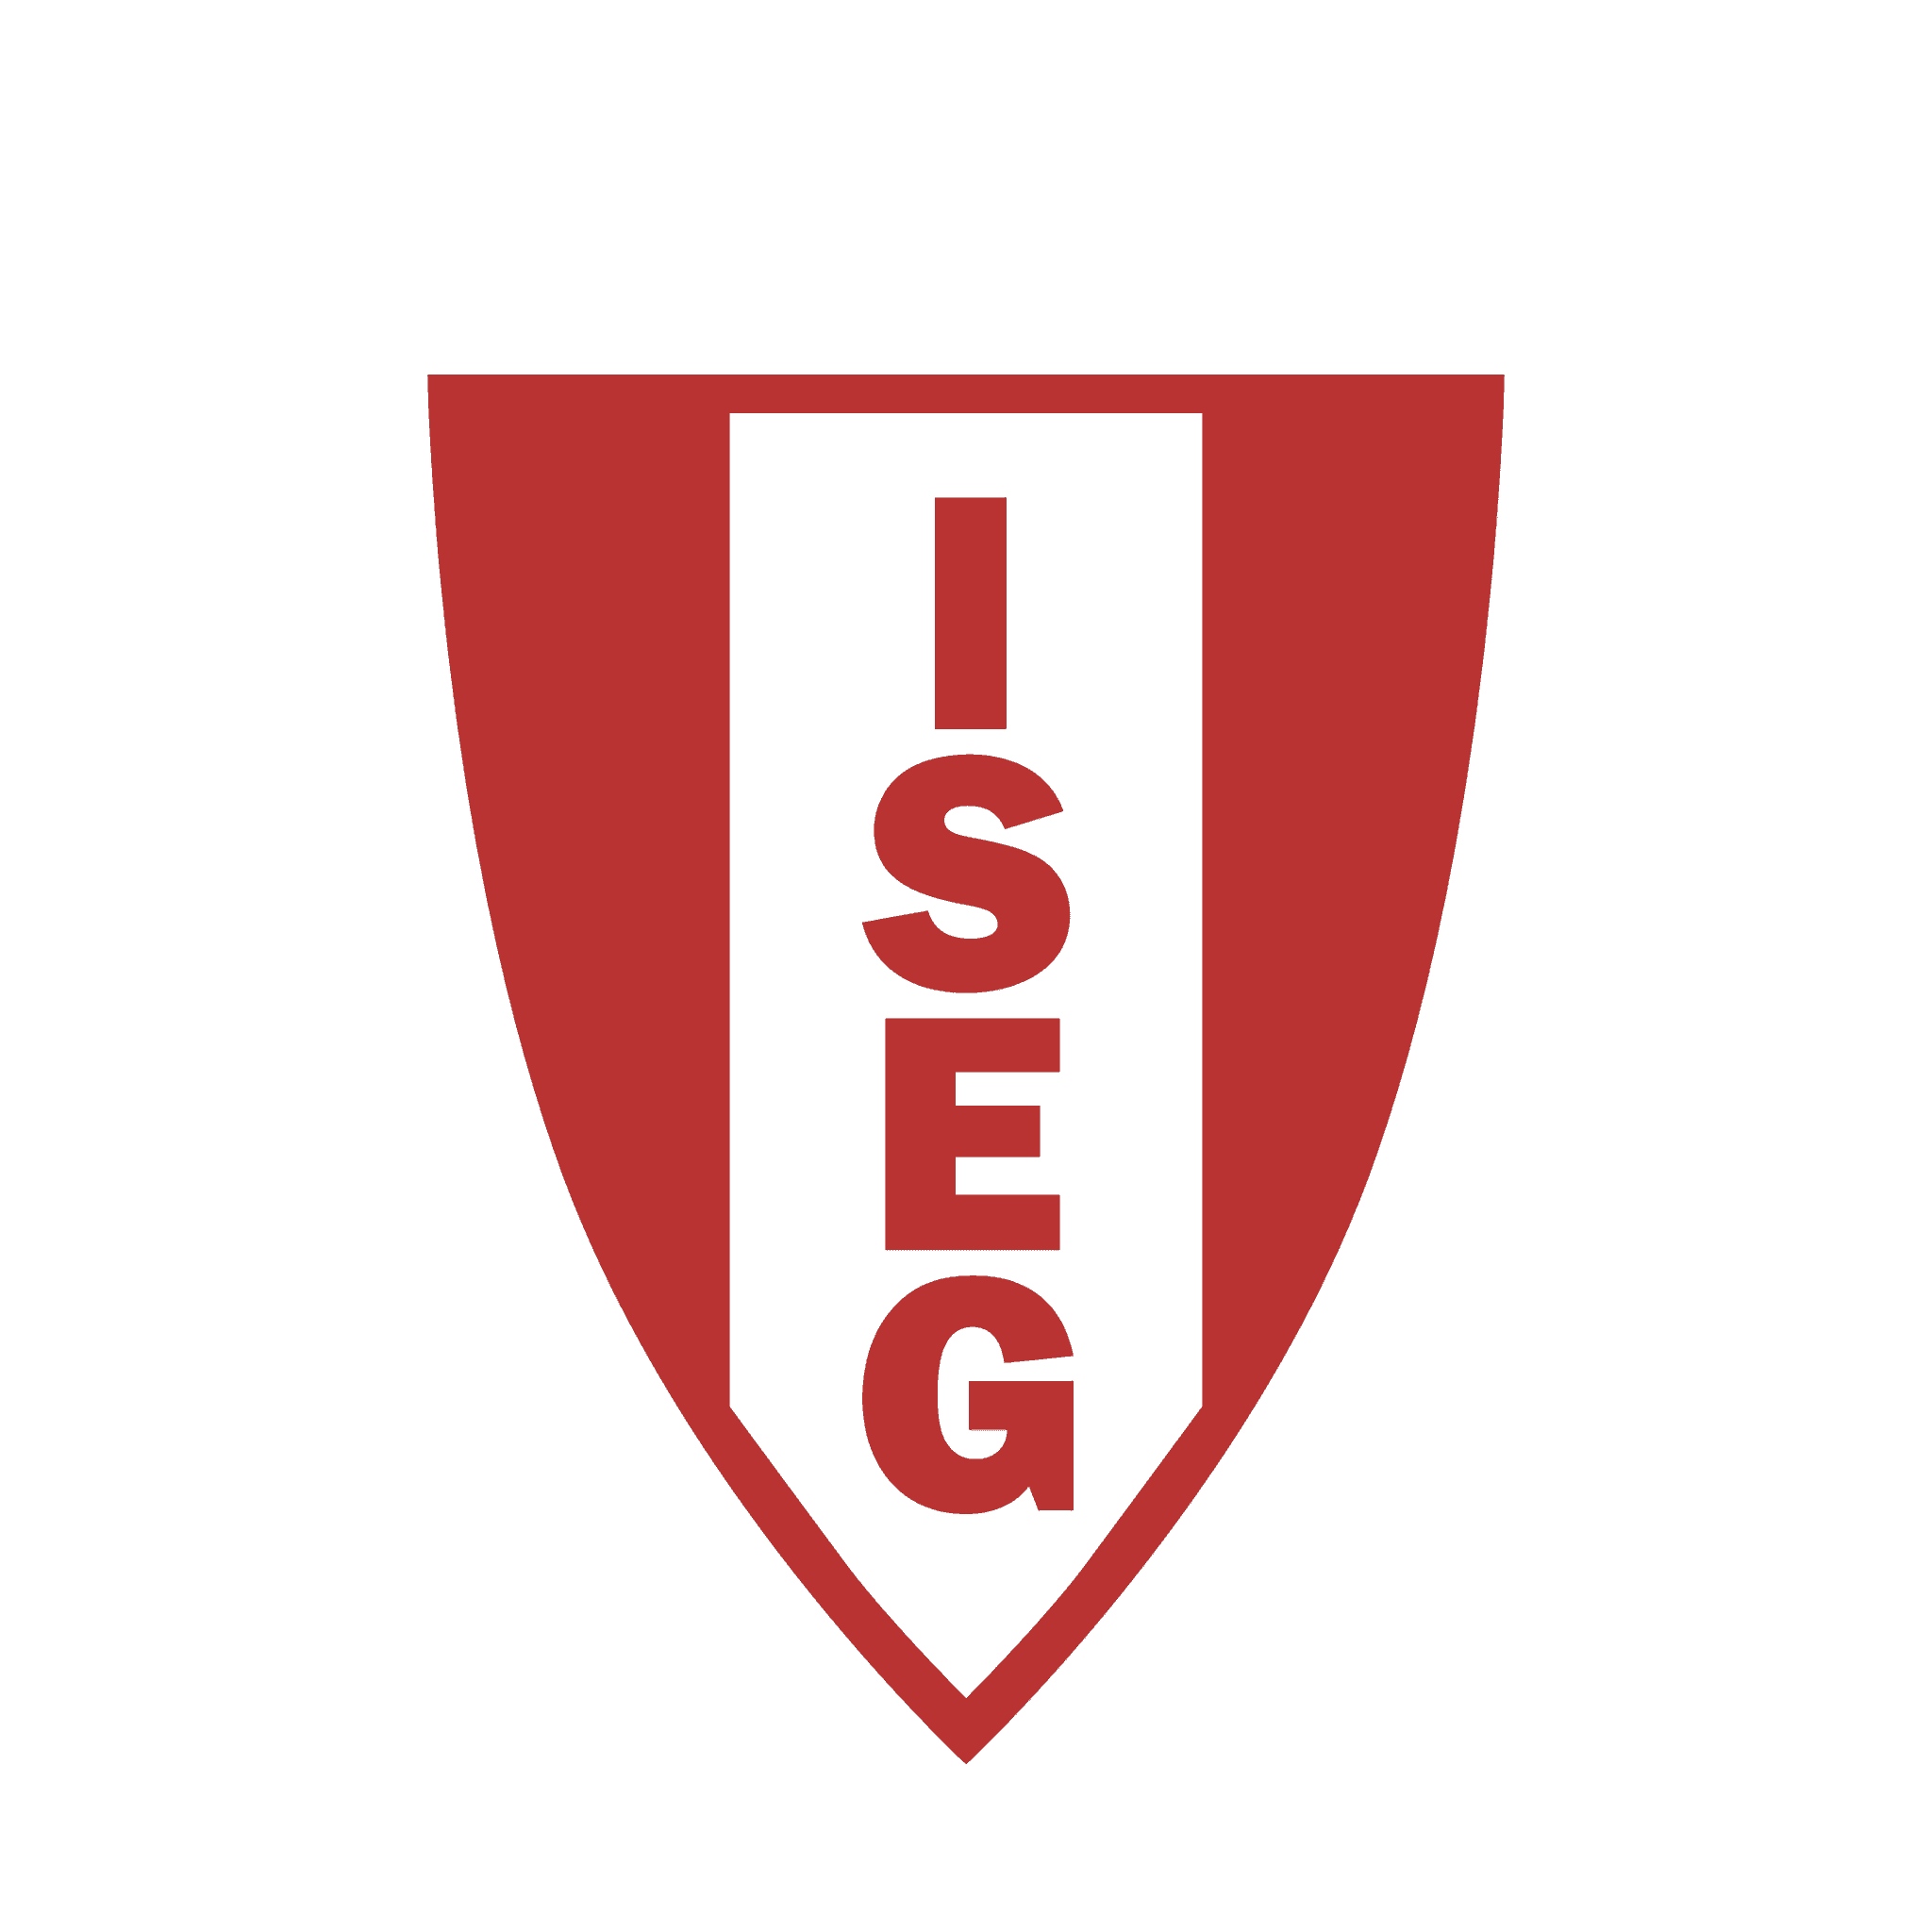 ISEG. +200 empresas com Estágio e Emprego | Talent Portugal